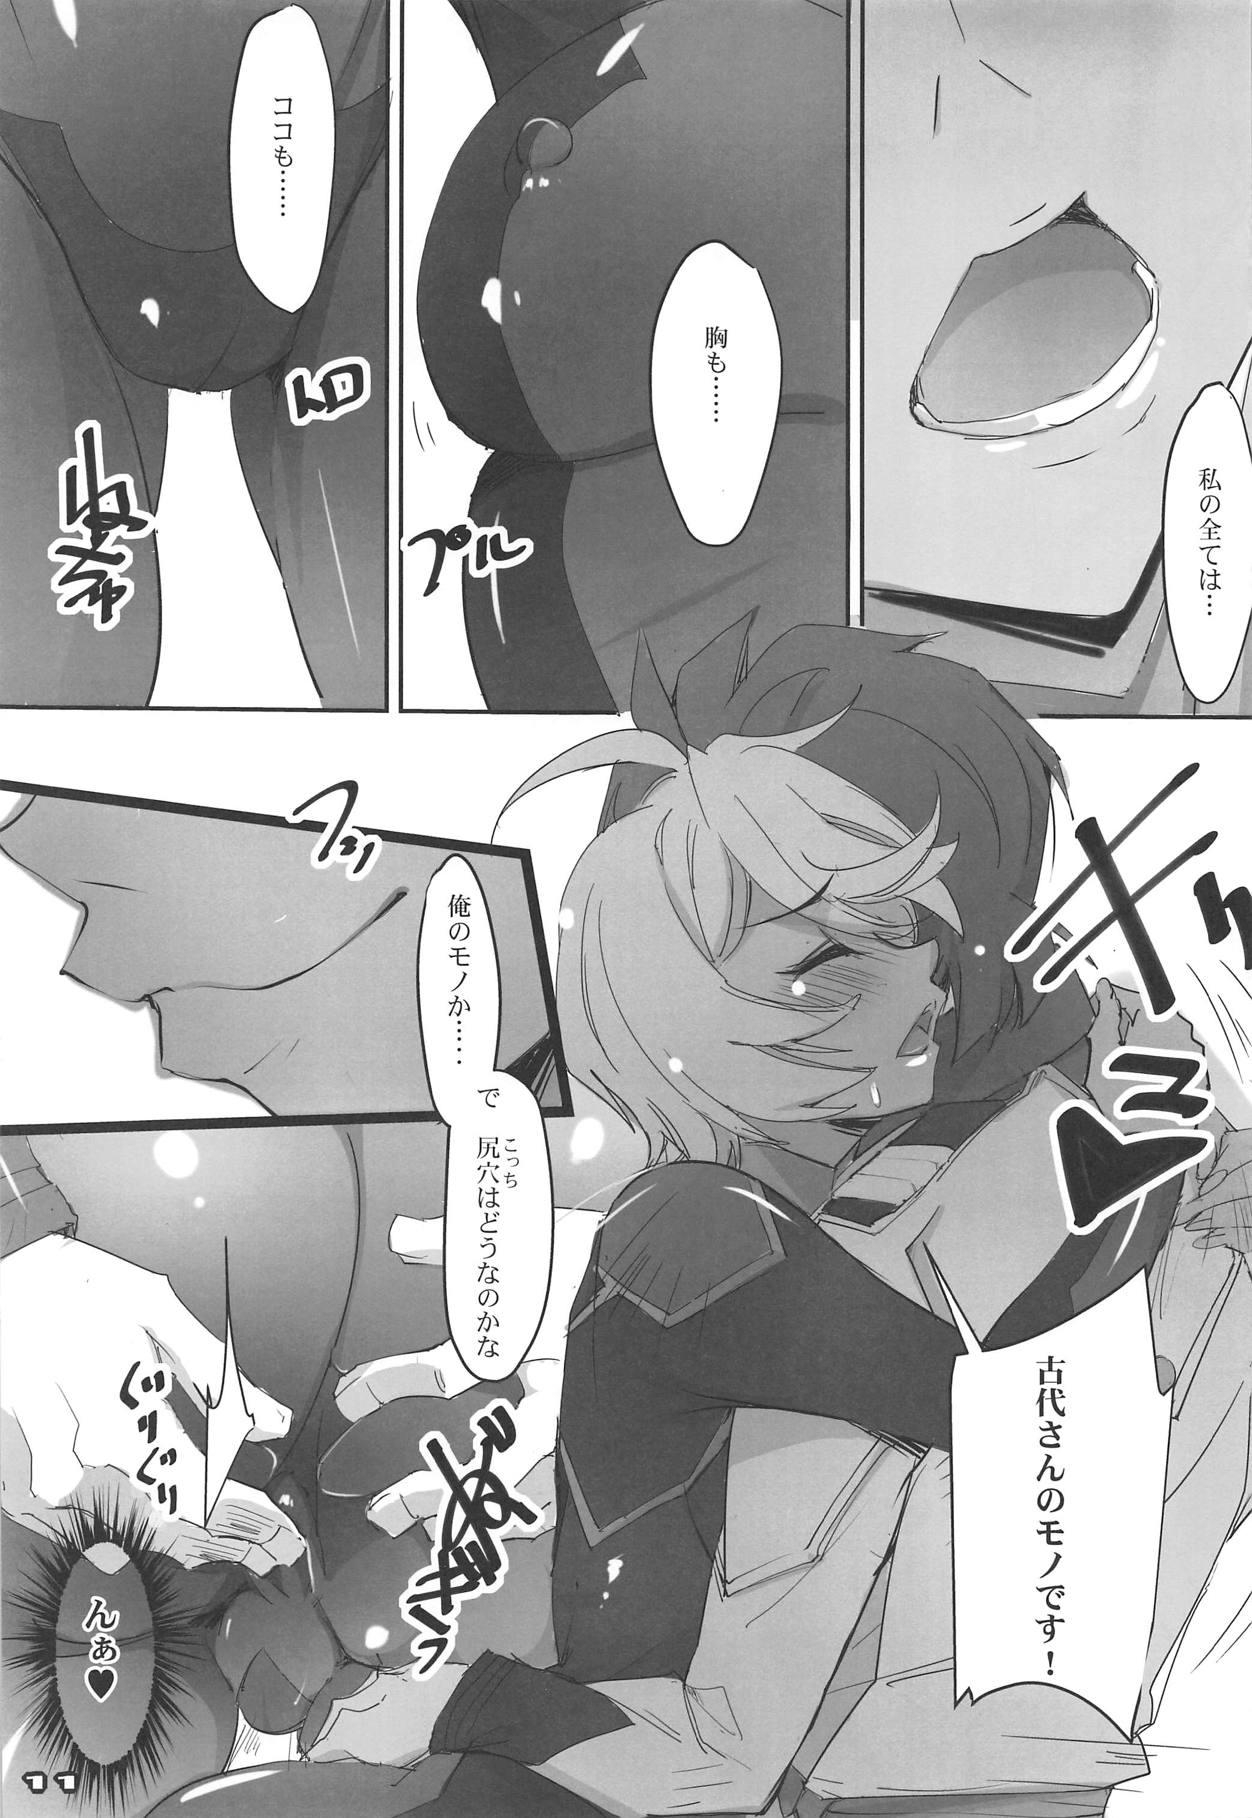 Grandma AKIRA2202 - Space battleship yamato 2199 Whore - Page 10